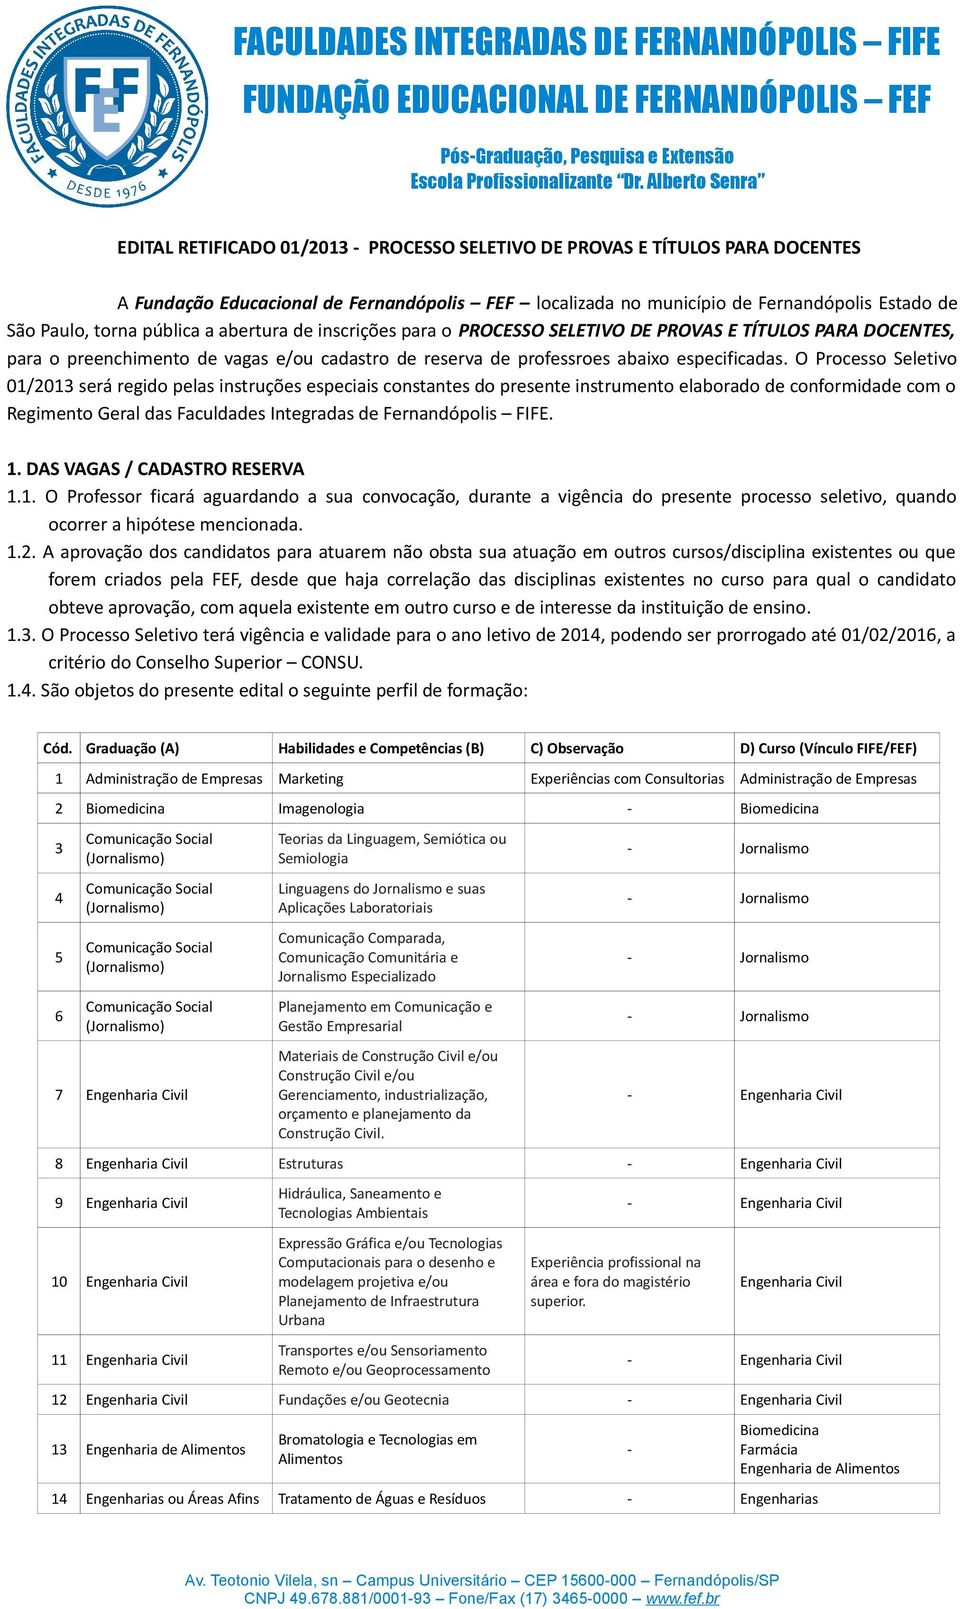 O Processo Seletivo 01/2013 será regido pelas instruções especiais constantes do presente instrumento elaborado de conformidade com o Regimento Geral das Faculdades Integradas de Fernandópolis FIFE.